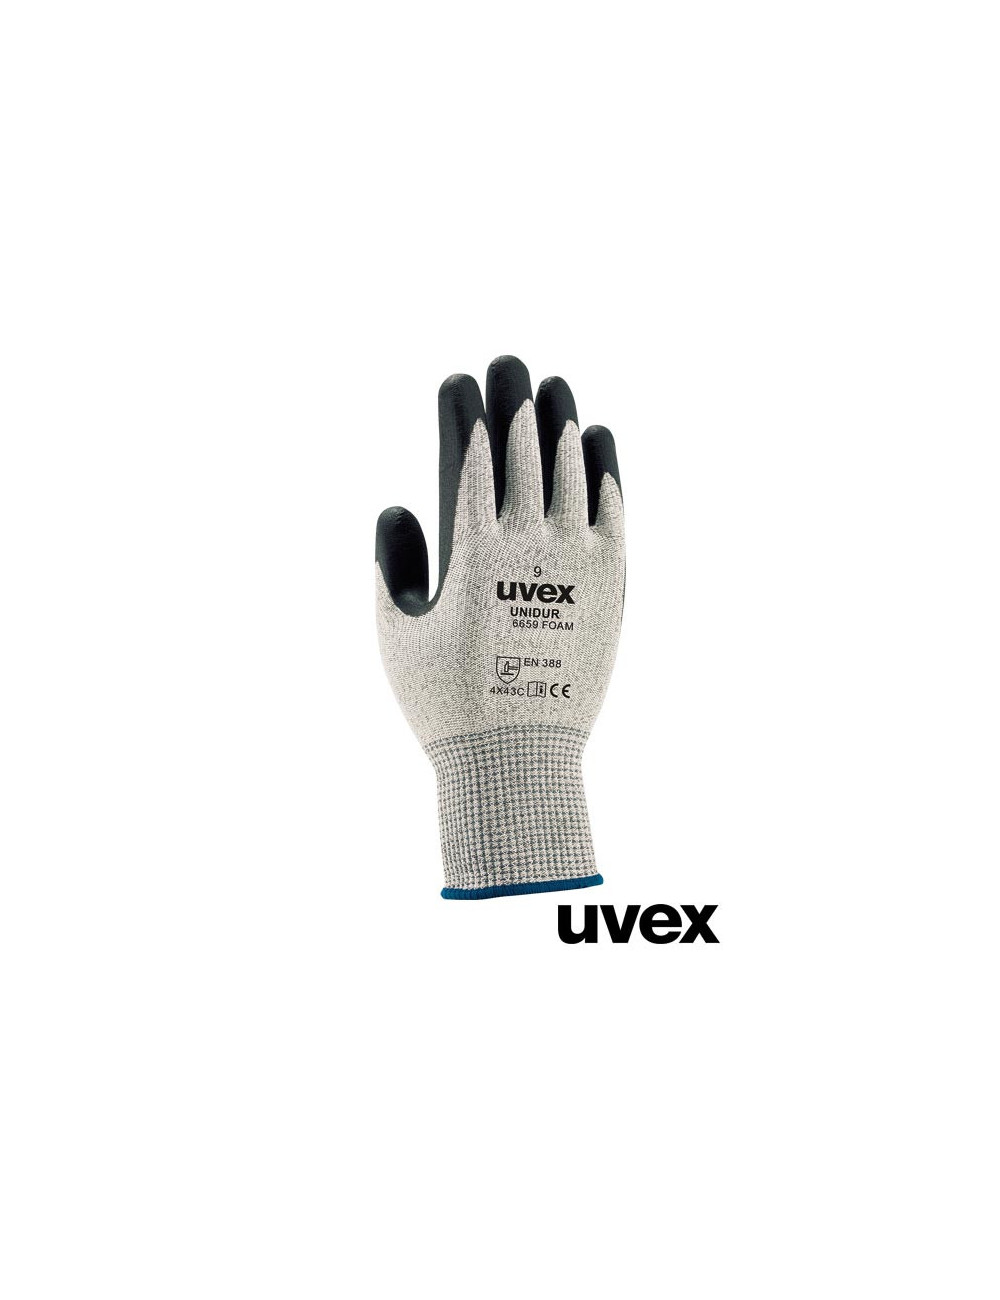 BWS Schutzhandschuhe schwarz, weiß und grau Uvex Ruvex-uni6659f